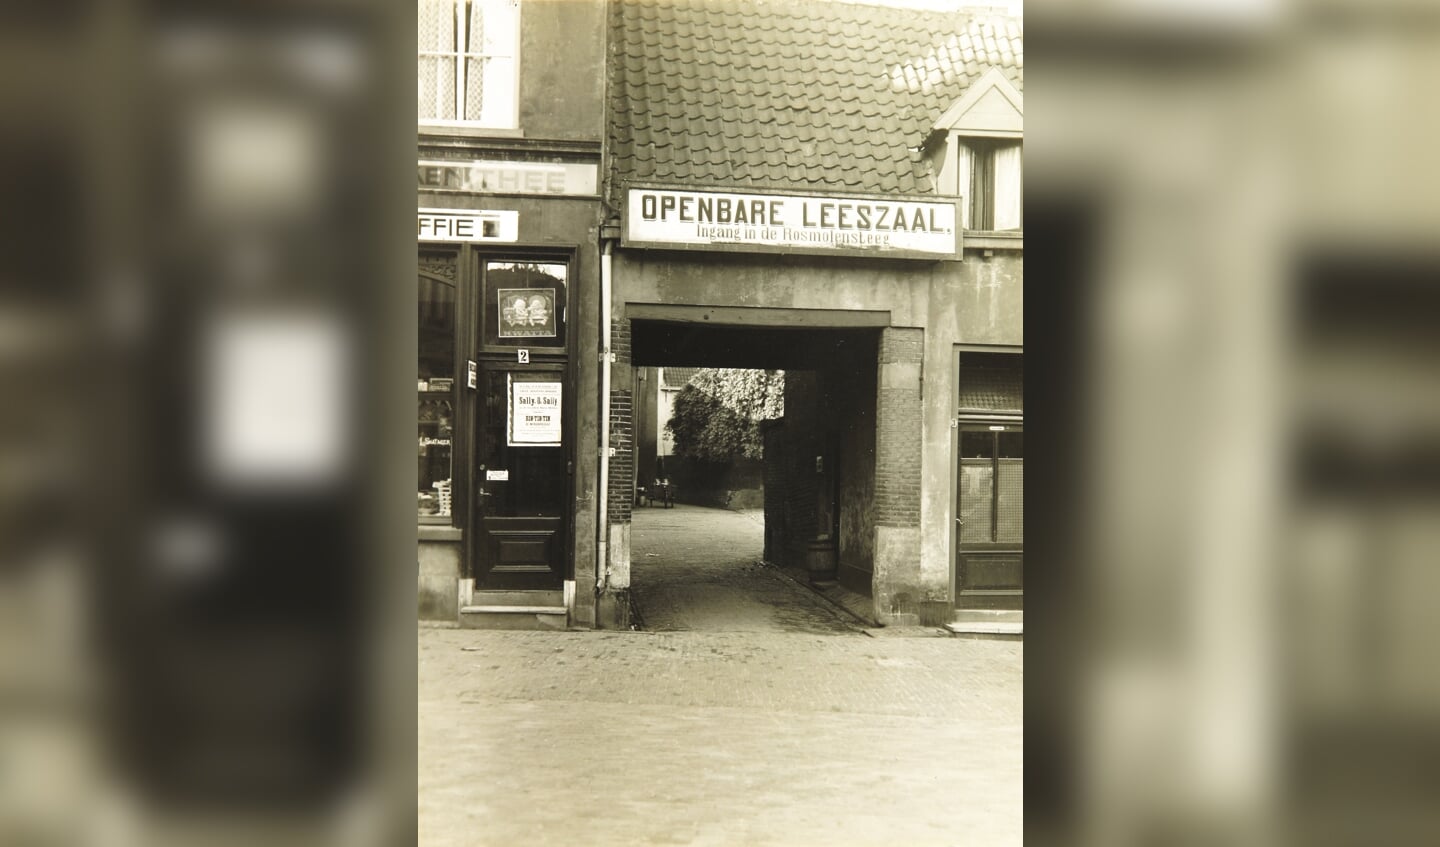 Ingang naar de openbare leeszaal in de Rosmolensteeg rond 1908. Foto: Erfgoedcentrum Zutphen